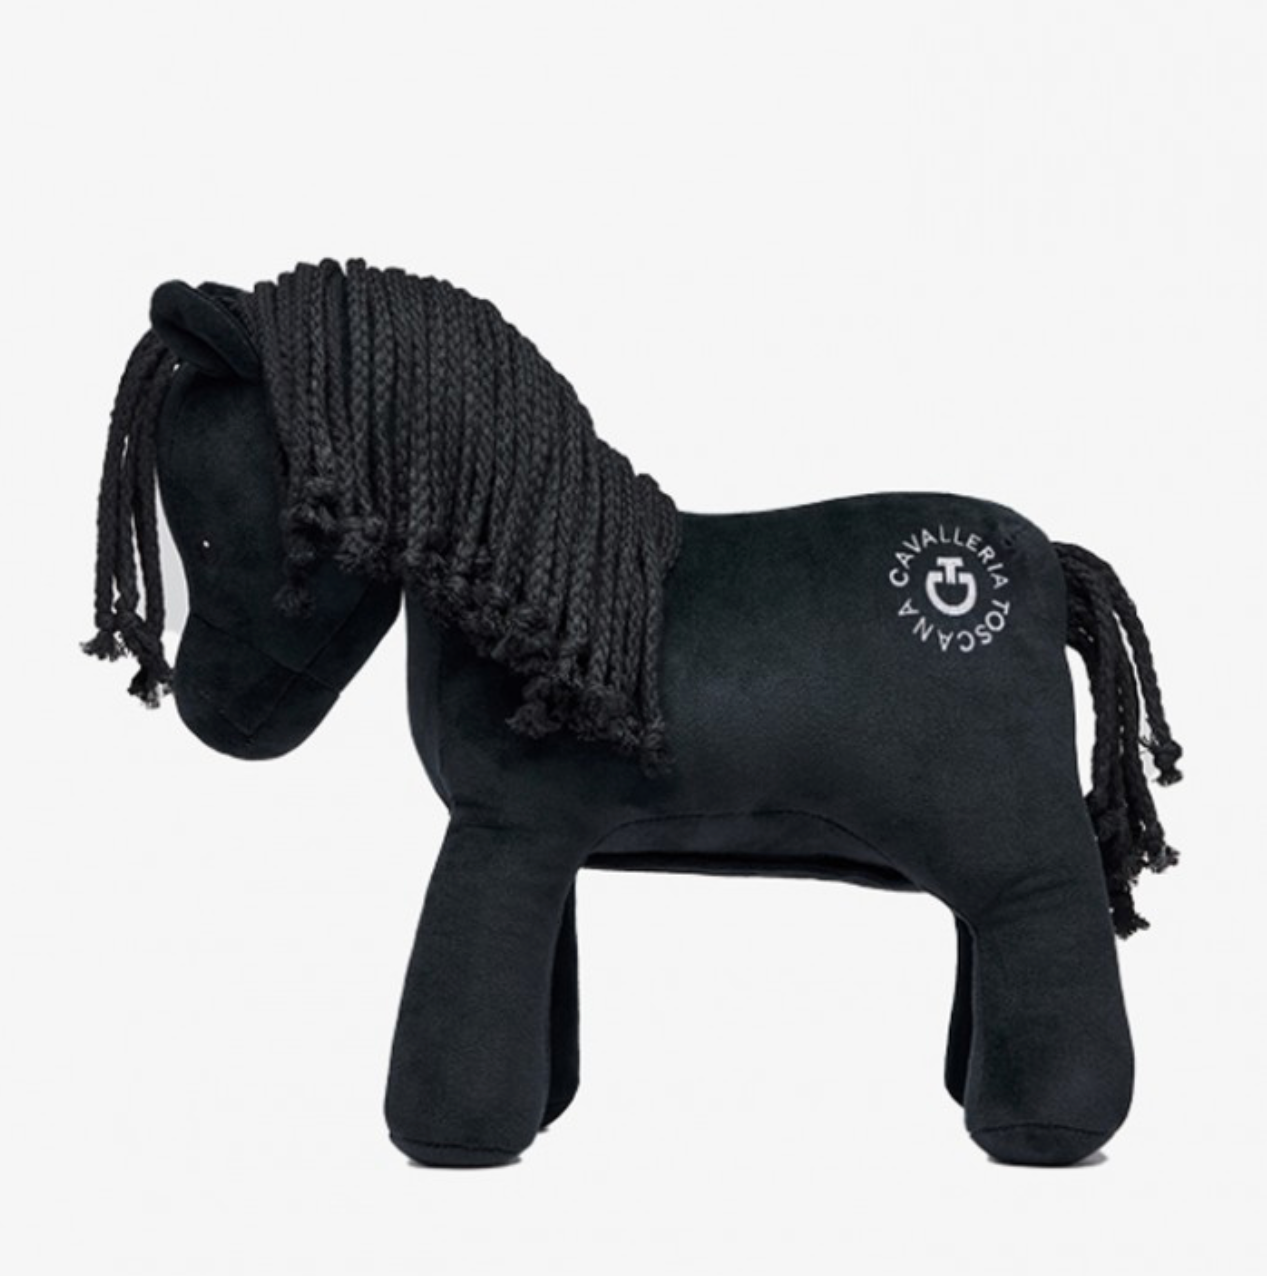 Ist dein Pferd im Stall gelangweilt? Dann ist das Horse Toy von Cavalleria Toscana der perfekte Begleiter! Mit einem Klettverschluss unter dem Bauch kann der Kunststoff im Inneren einfach ausgetauscht werden, um stundenlangen Spaß zu garantieren.